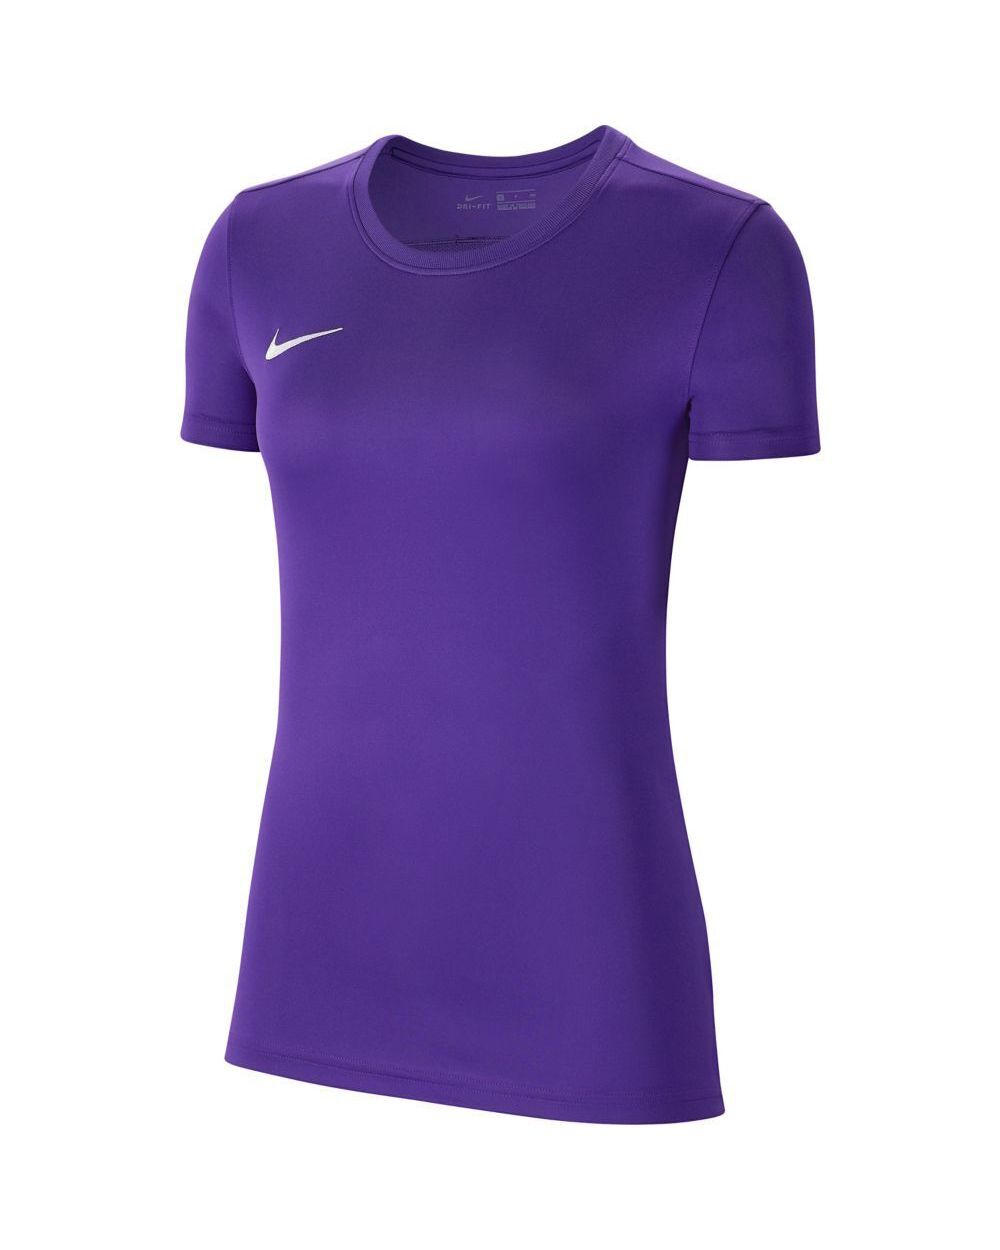 Camiseta Nike Park VII Violeta para Mujeres - BV6728-547